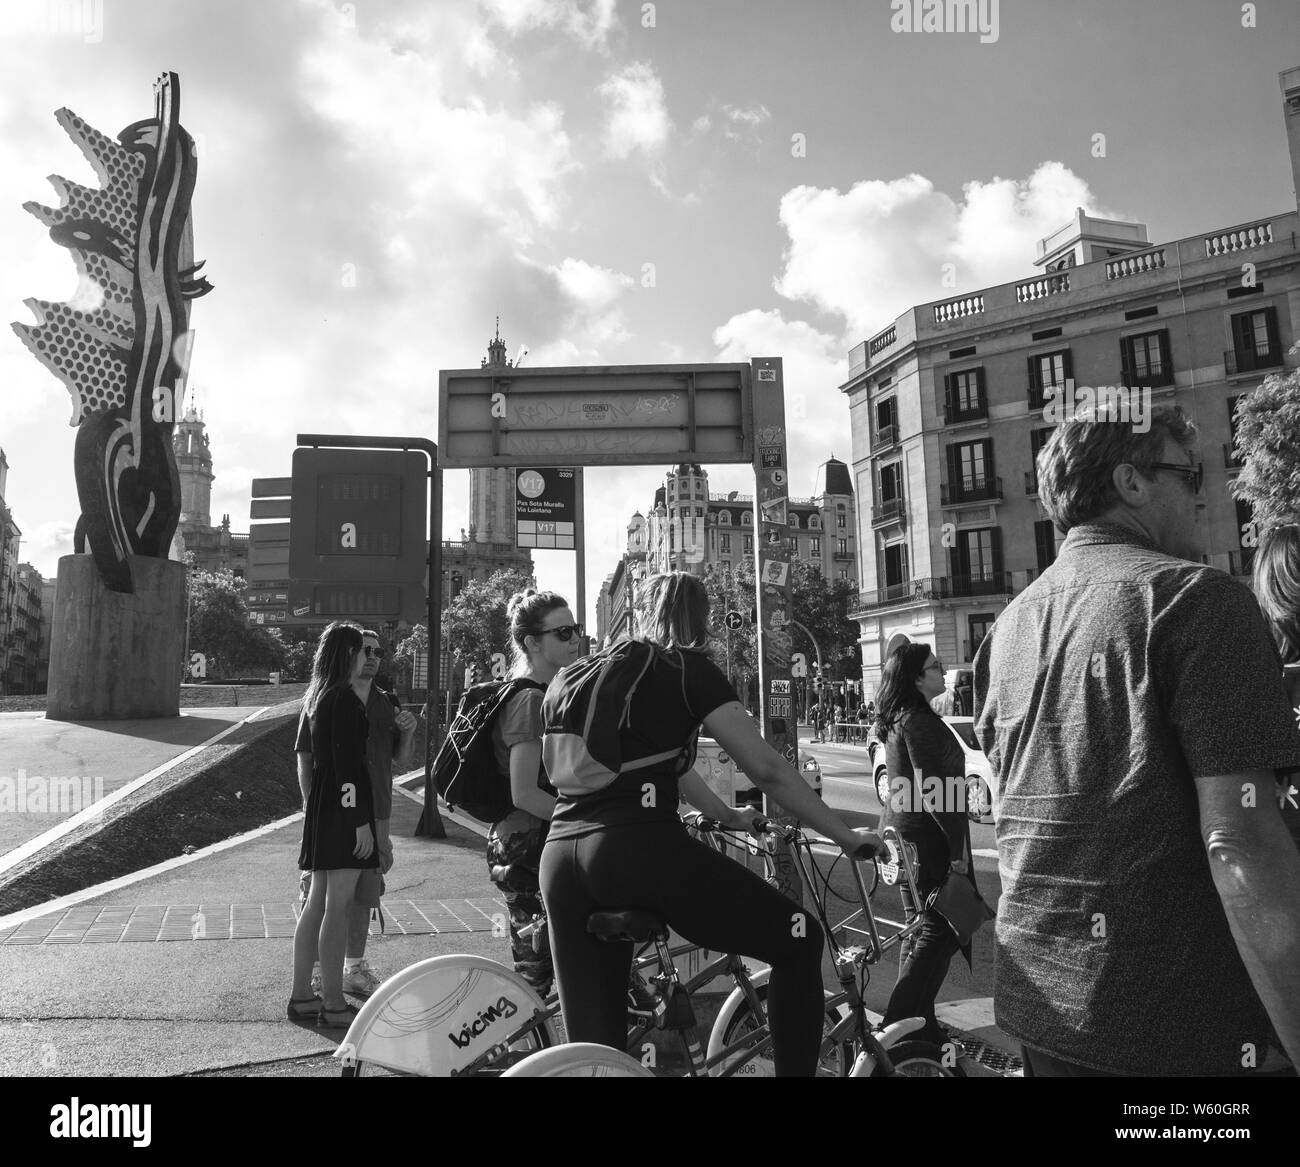 Barcelona, Spanien - Jun 1, 2018: Fußgänger Männer und Frauen Radfahrer warten die geschäftigen Pas Sota Muralla Straße bei Sonnenuntergang zu überqueren - Schwarz und Weiß Stockfoto